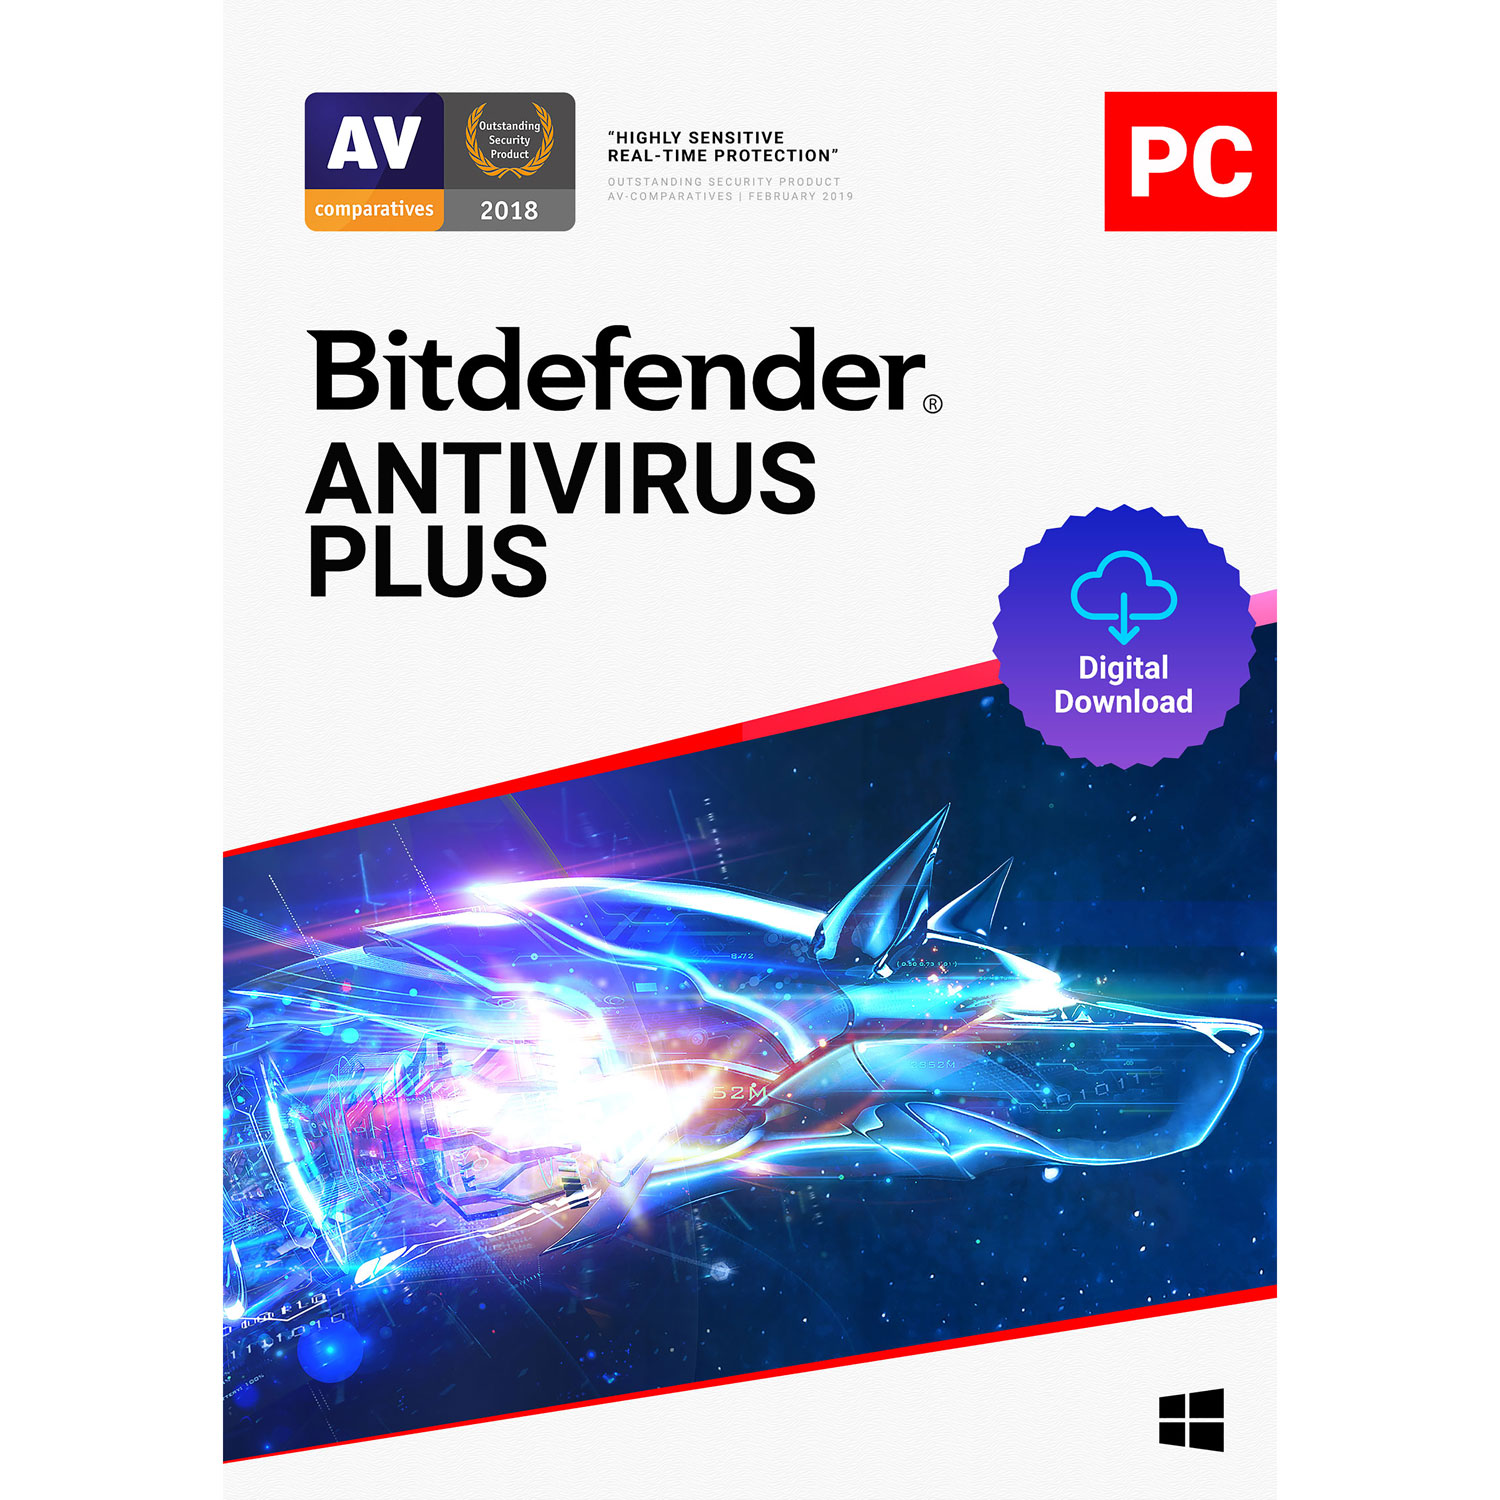 Bitdefender Antivirus Plus (PC) - 1 User - 1 Year - Digital Download